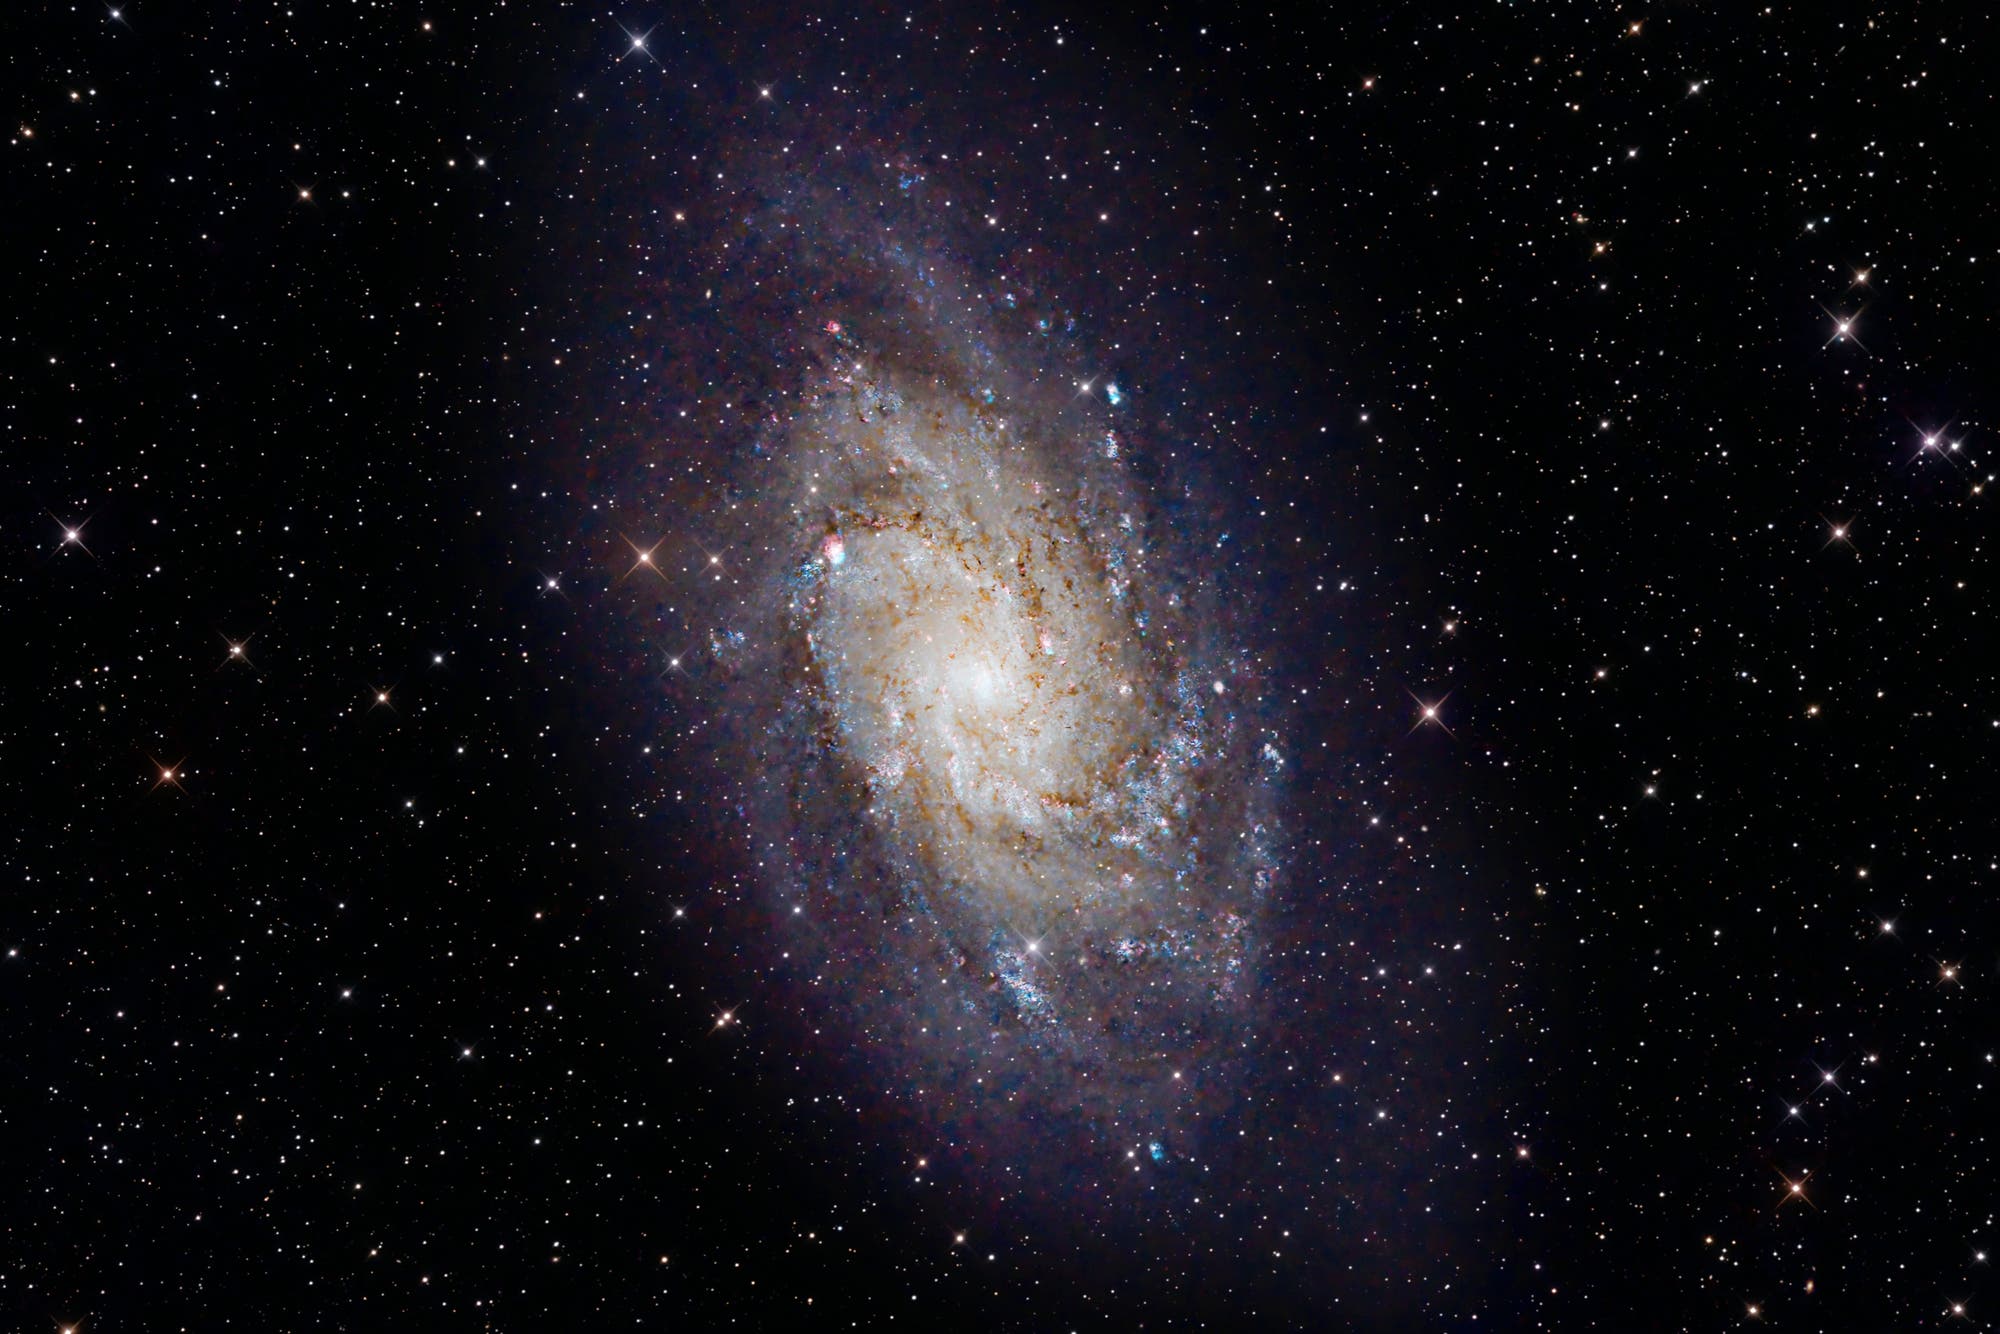 Triangulum-Galaxie, M33